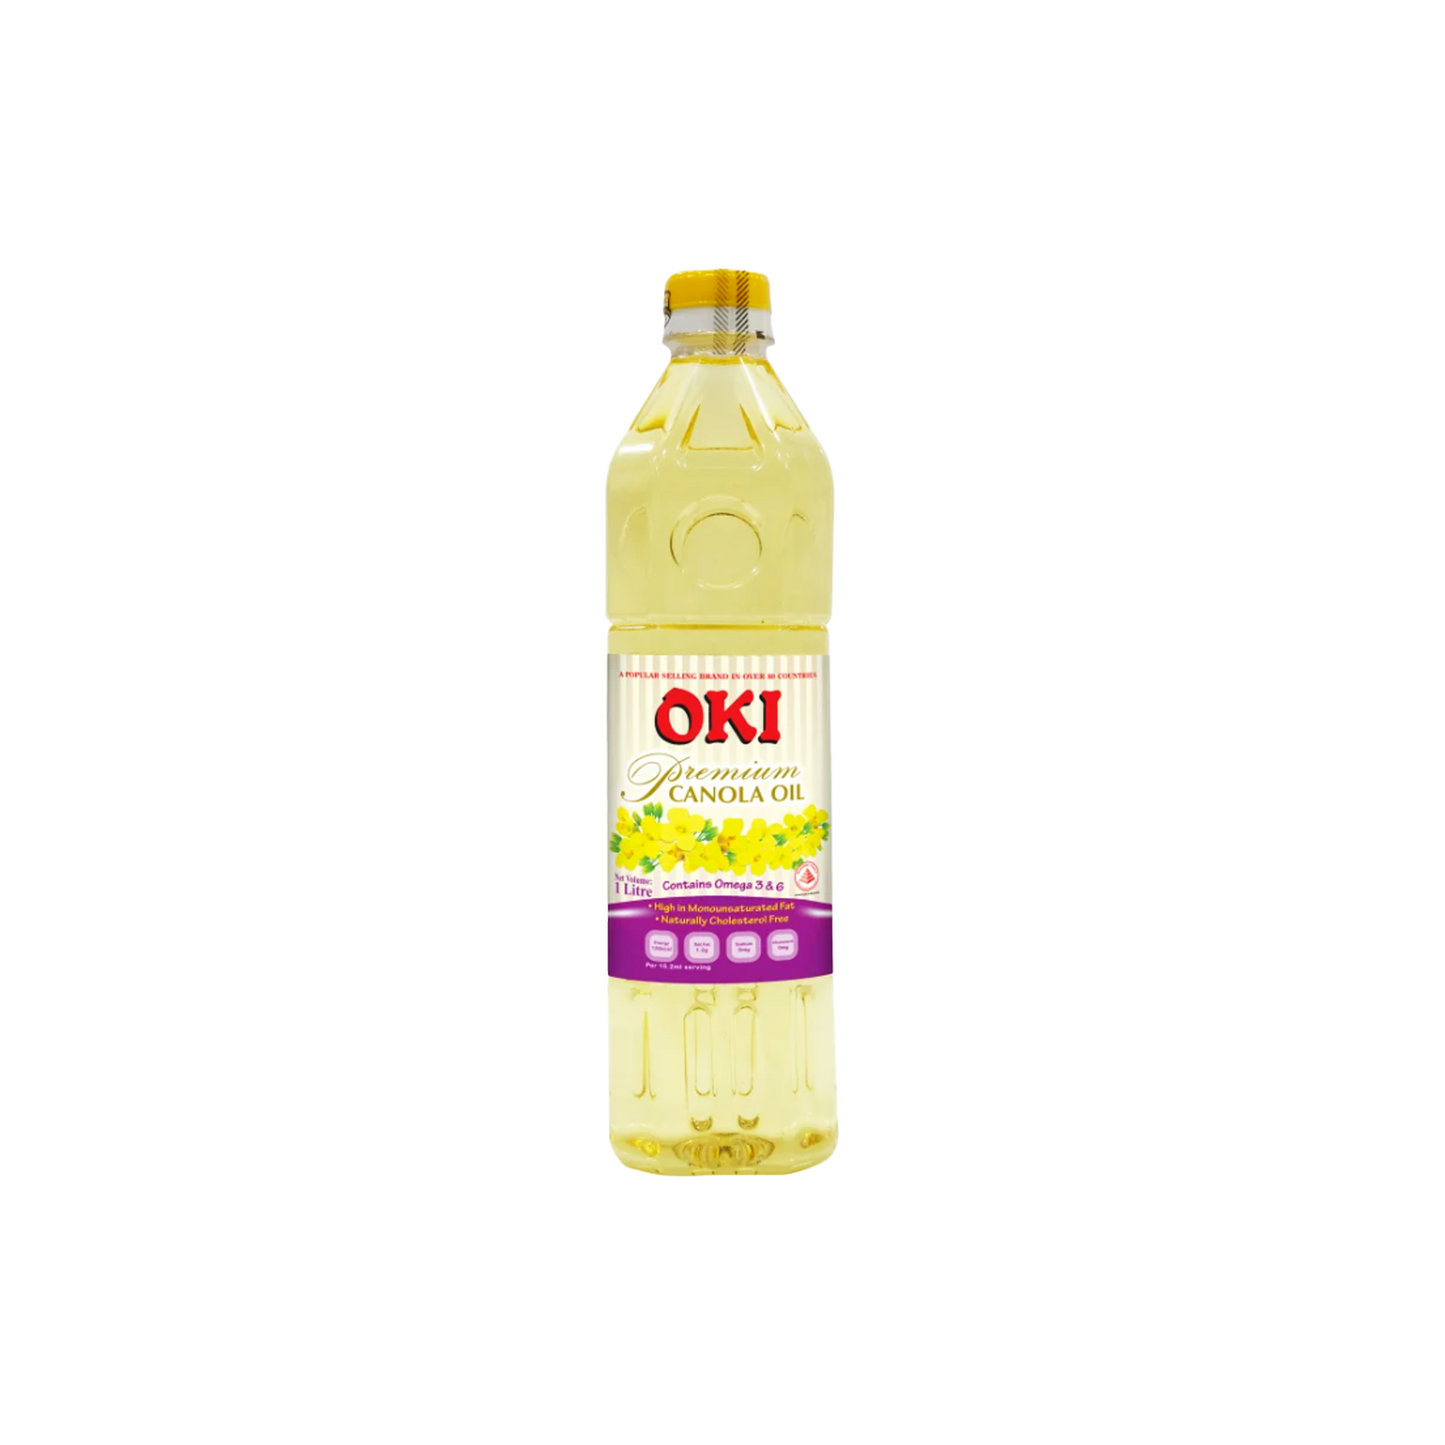 OKI CANOLA OIL (1L)